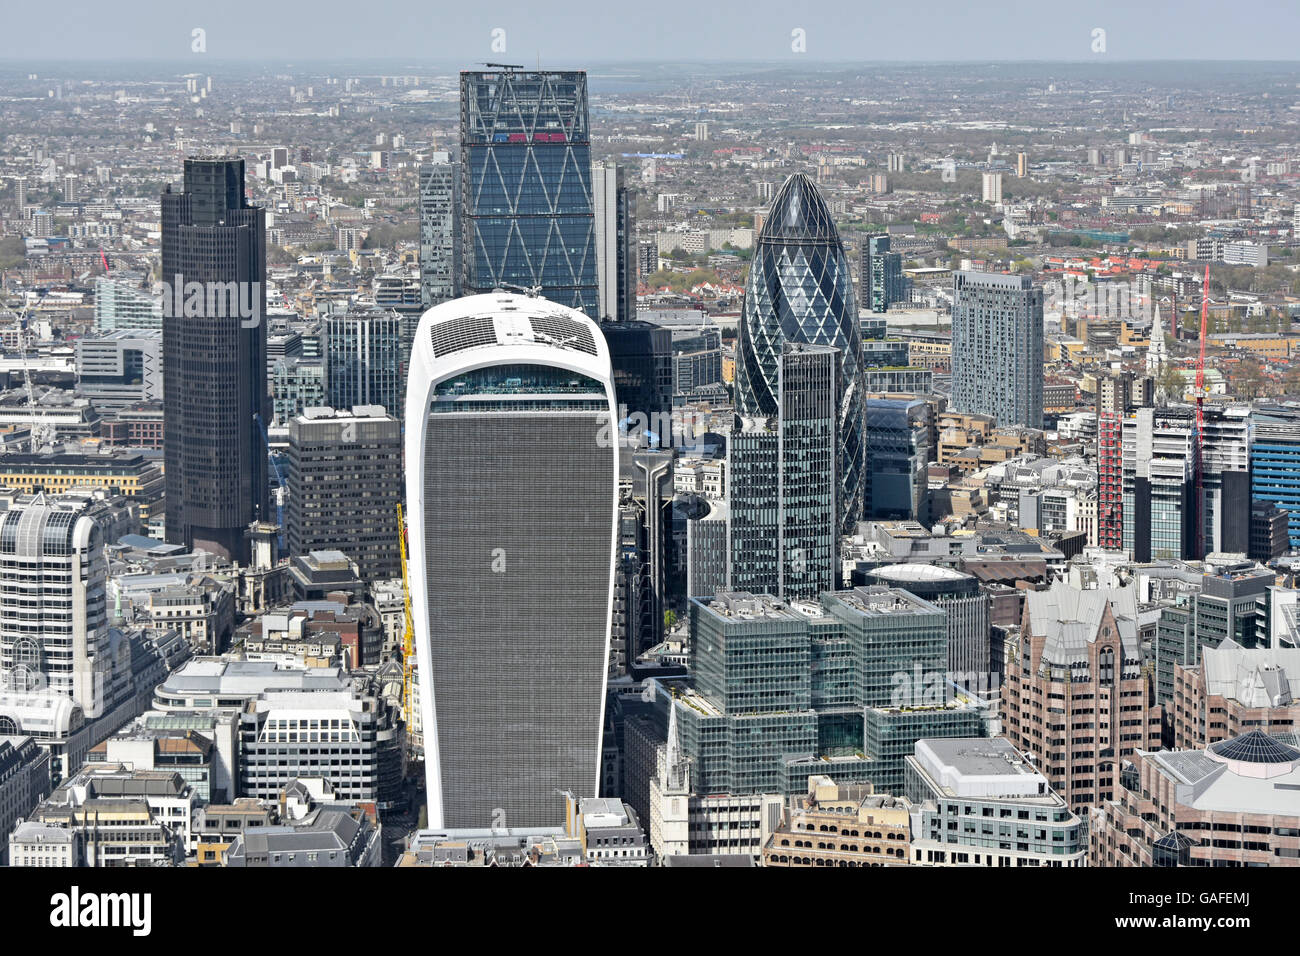 Vue aérienne regardant vers le bas vers les gratte-ciel de la ville de Londres, y compris le bâtiment Walkie Talkie (devant) et le bâtiment Gherkin UK gratte-ciel Angleterre Royaume-Uni Banque D'Images